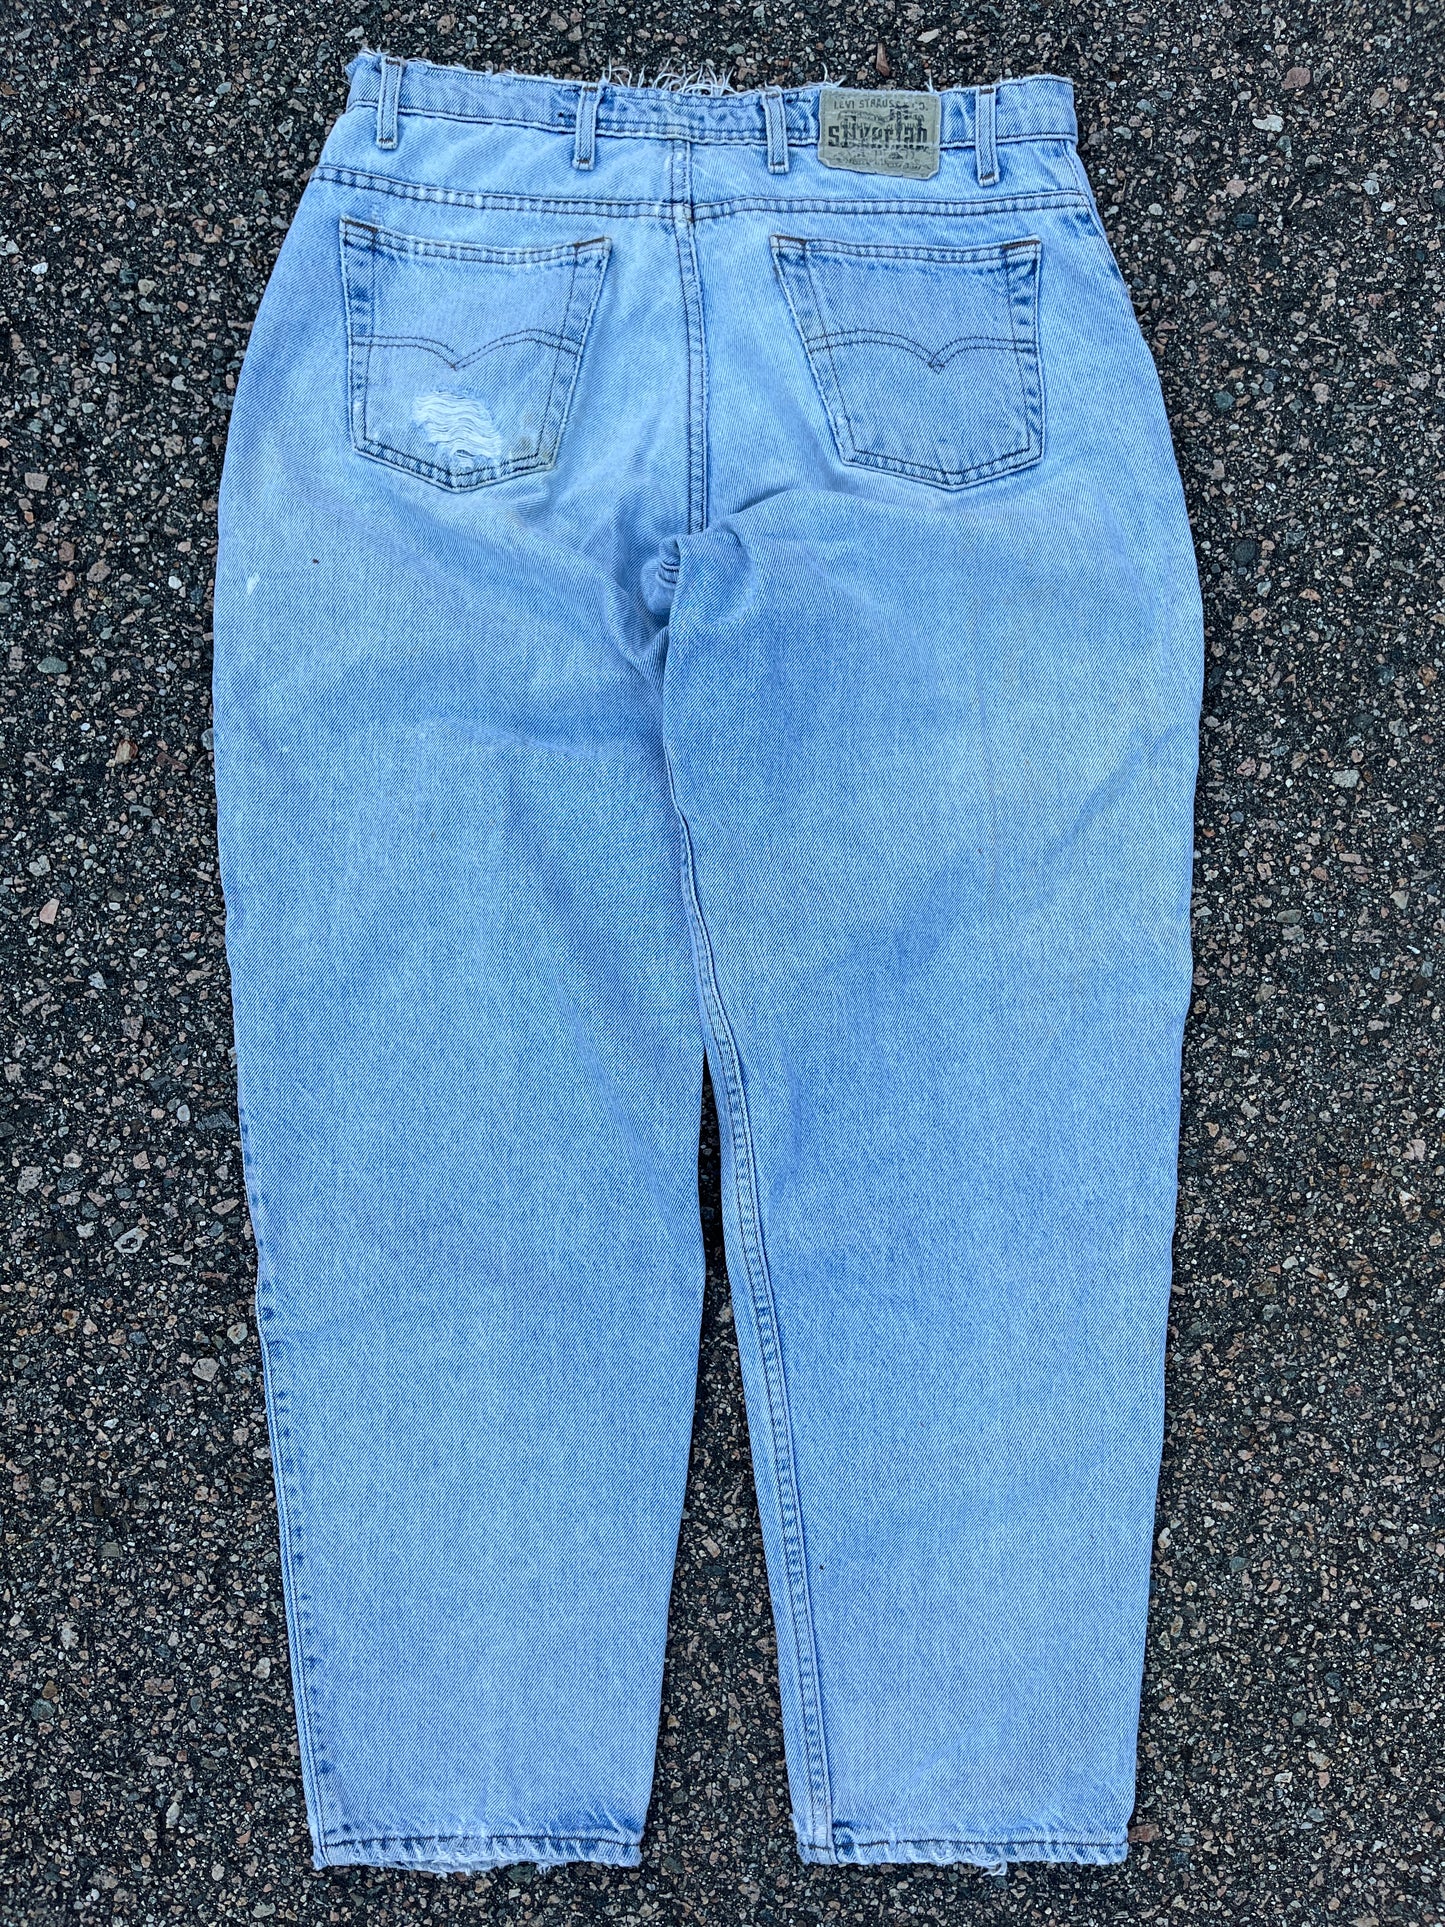 Levi’s 661 Silvertab Faded Denim Loose Fit Pants - 31 x 29.5